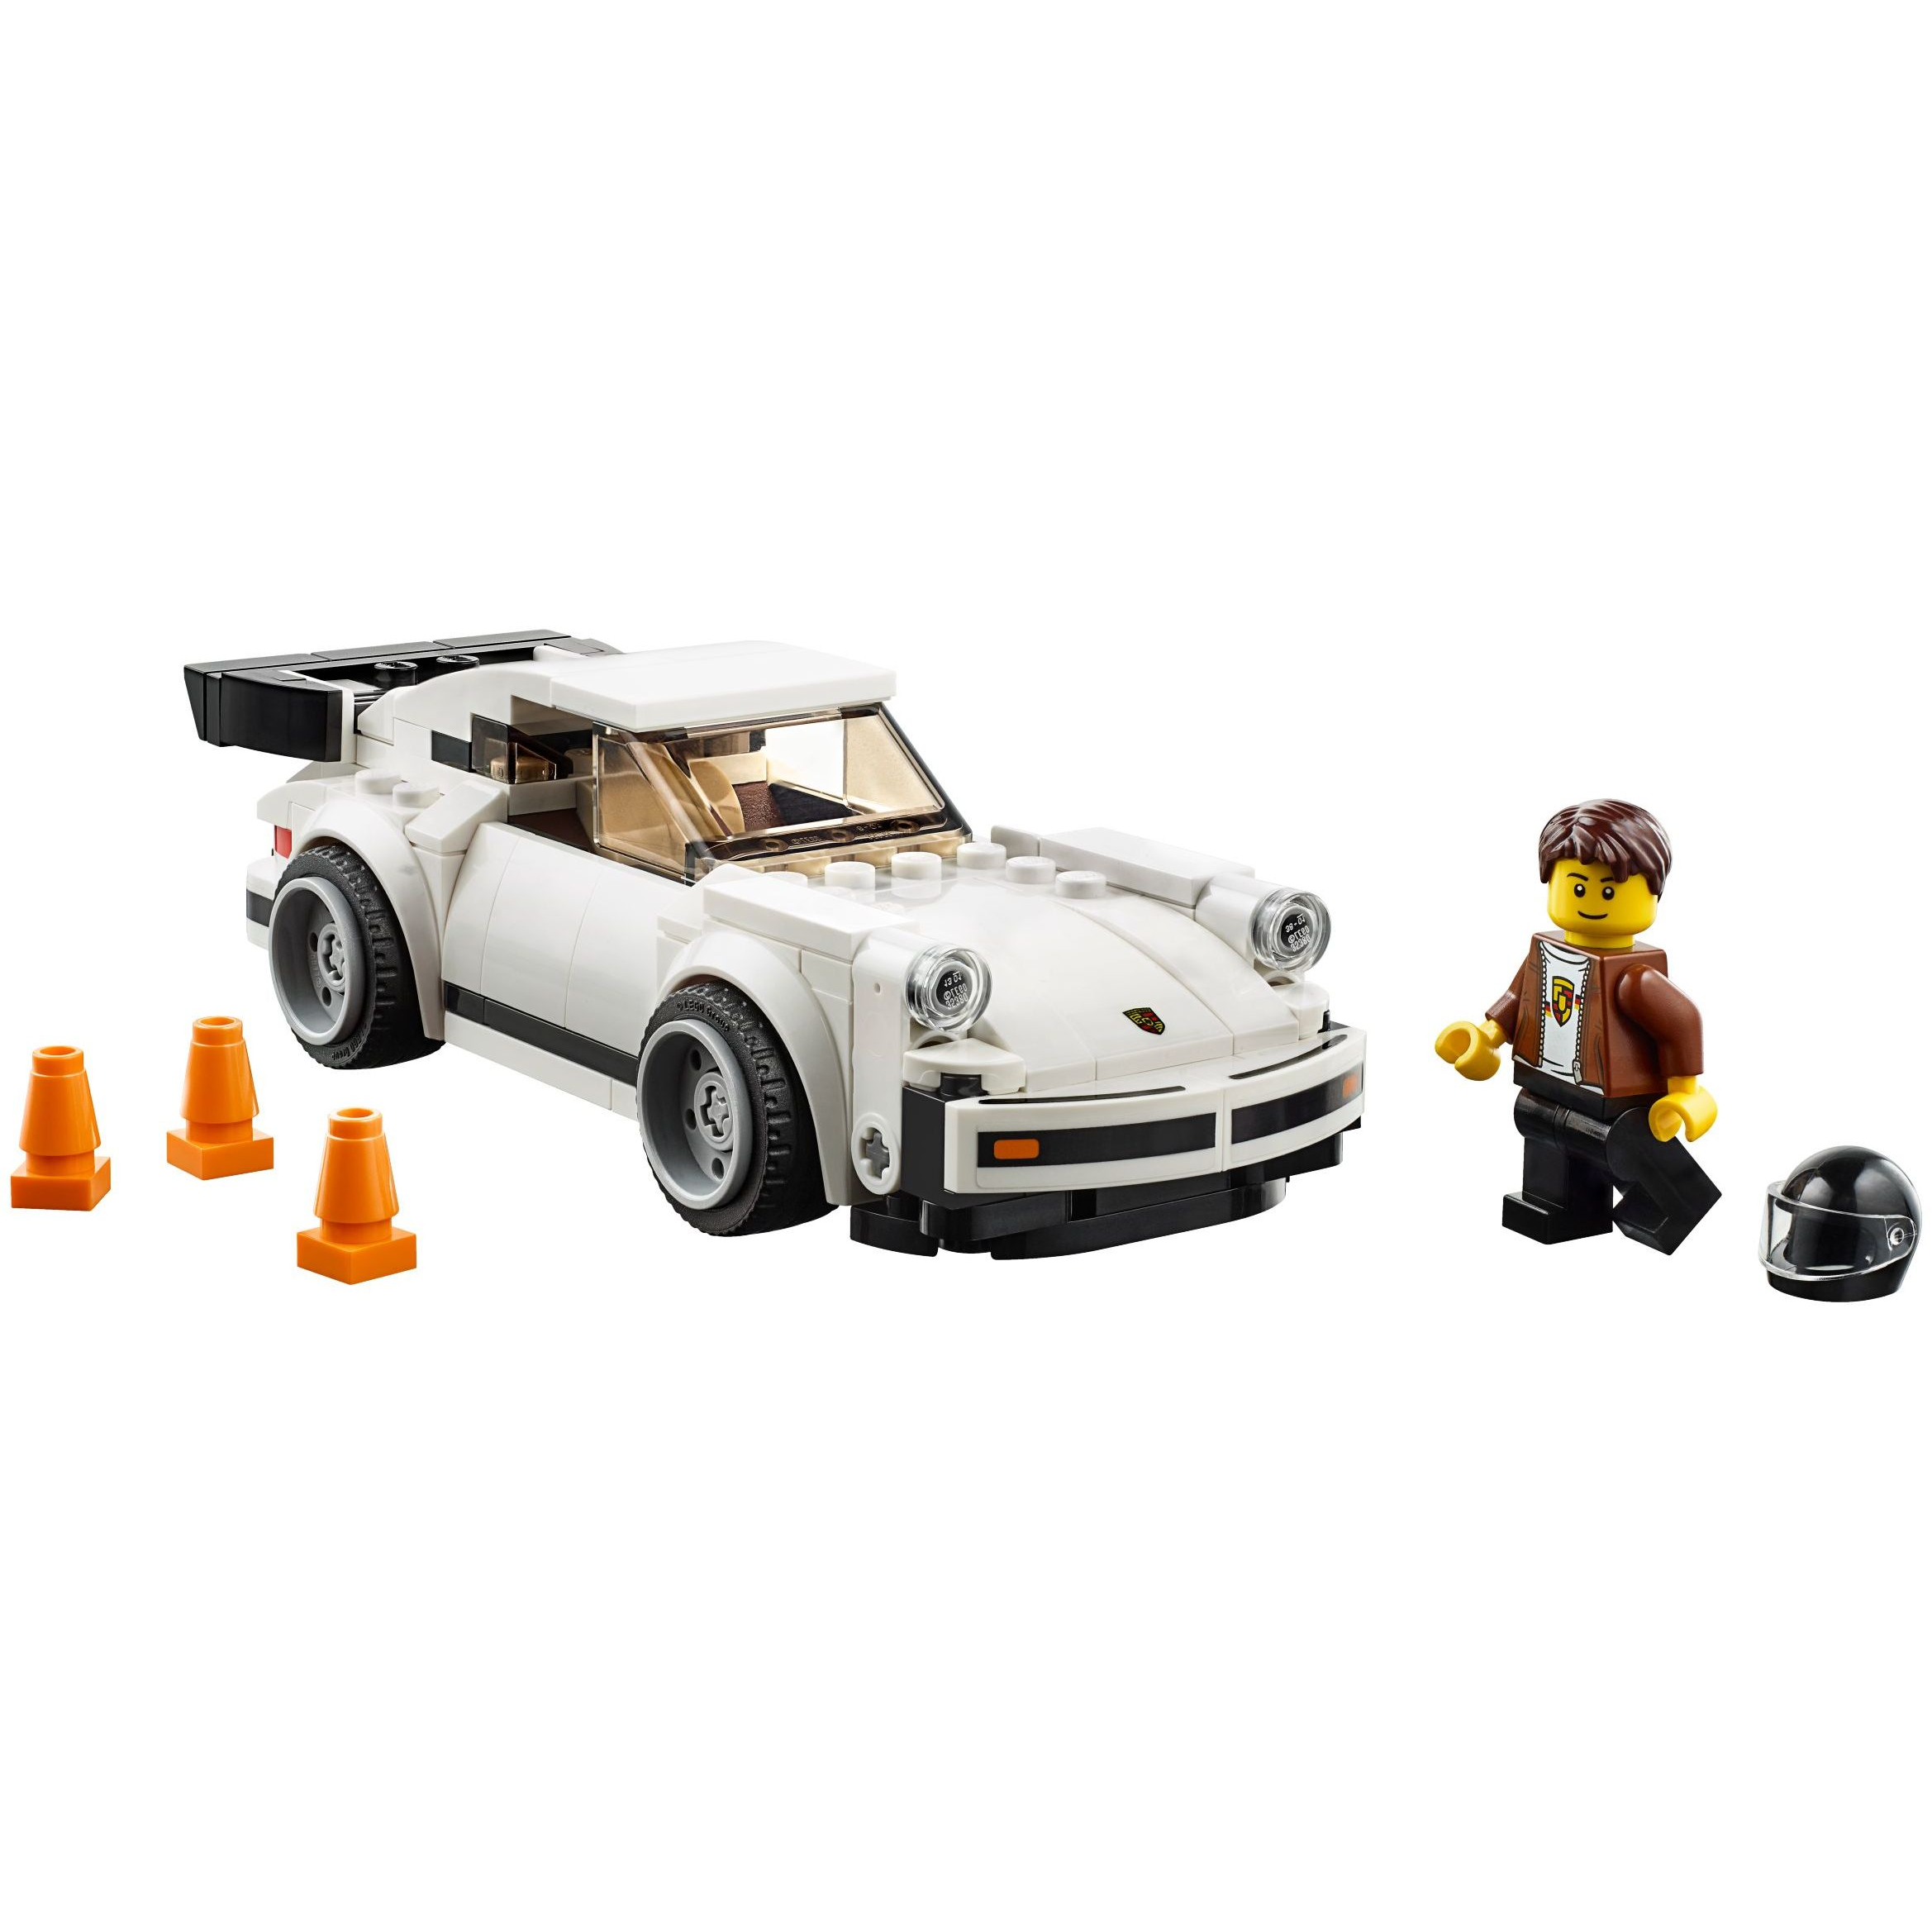 盒損無盒出貨 好時光 Lego 樂高 SPEED 75895 保時捷 1974 Porsche 911 Turbo